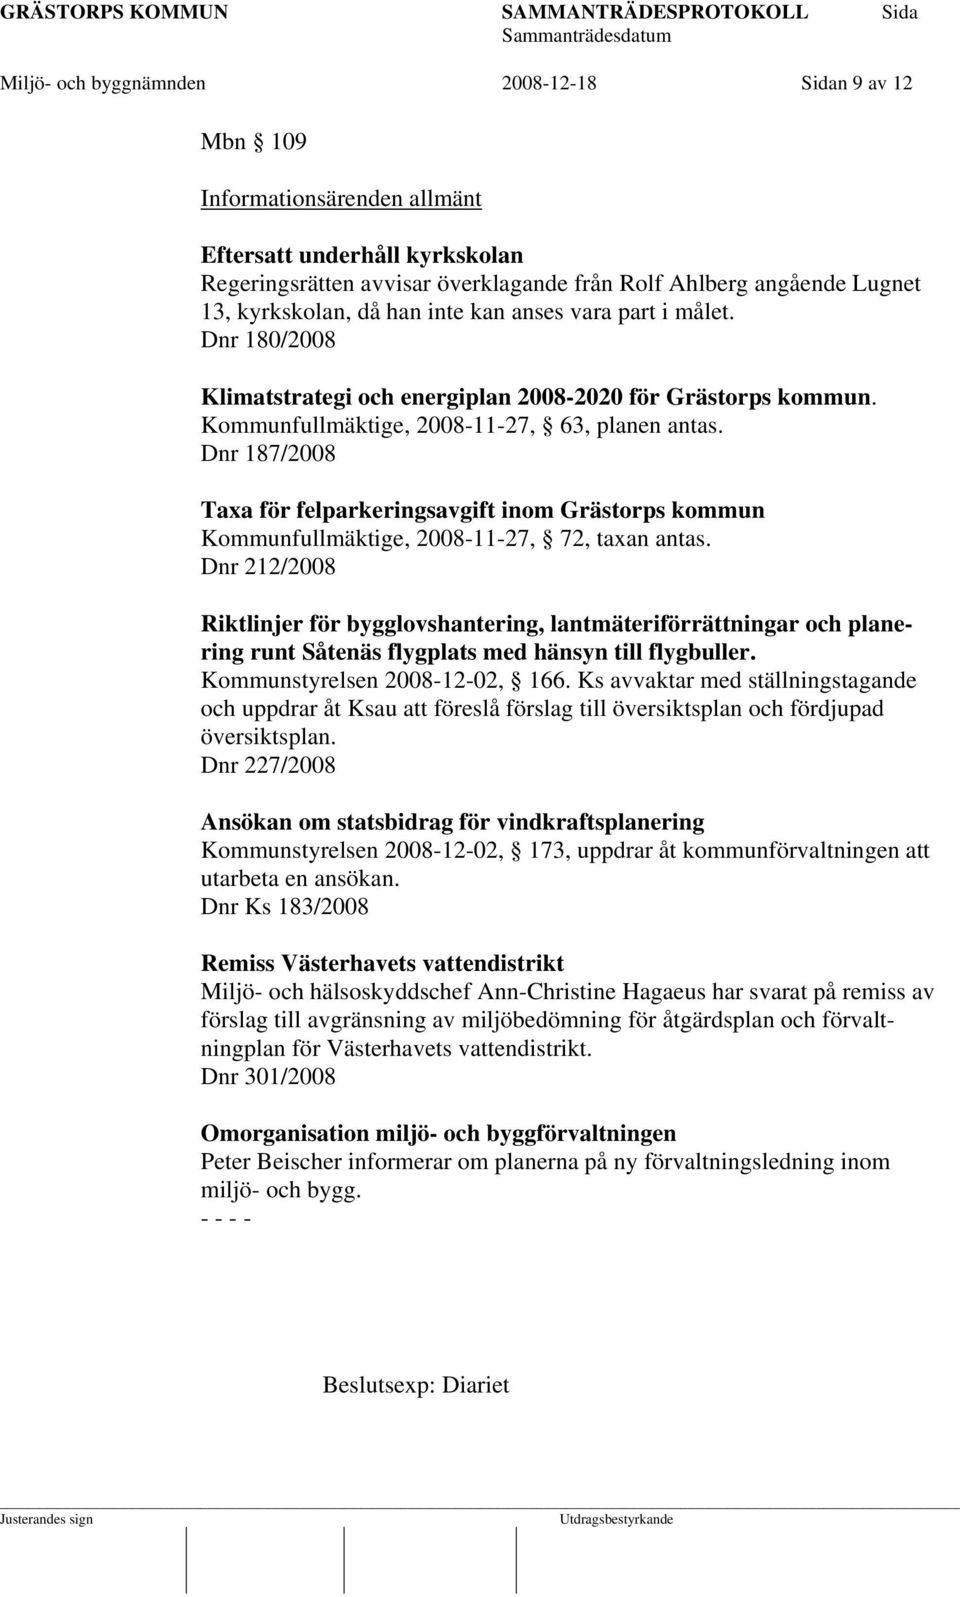 Dnr 187/2008 Taxa för felparkeringsavgift inom Grästorps kommun Kommunfullmäktige, 2008-11-27, 72, taxan antas.